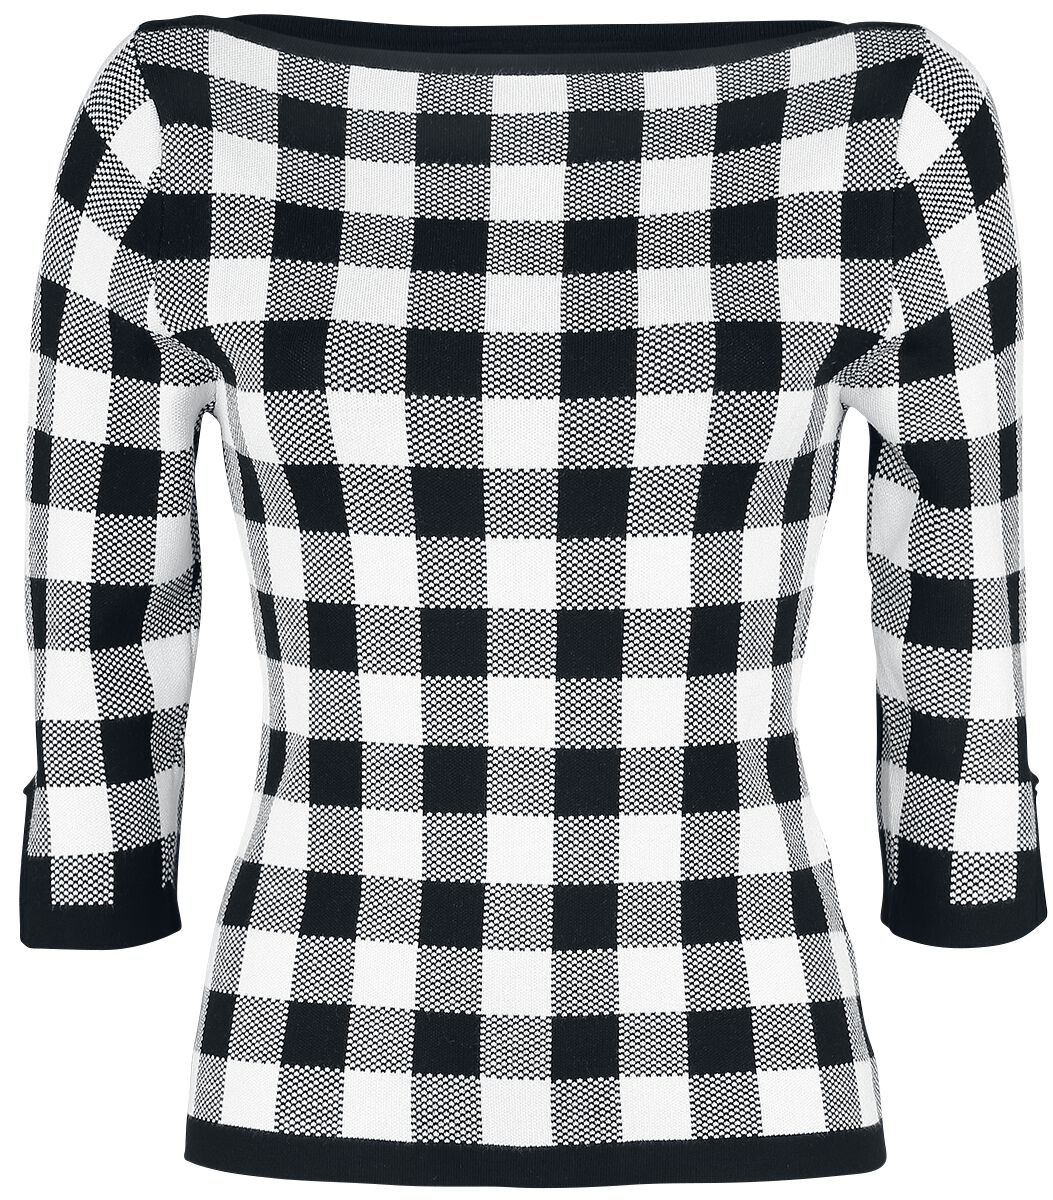 Pull tricoté Rockabilly de Banned Retro - Pull Tricoté Carreaux - S à 4XL - pour Femme - noir/blanc